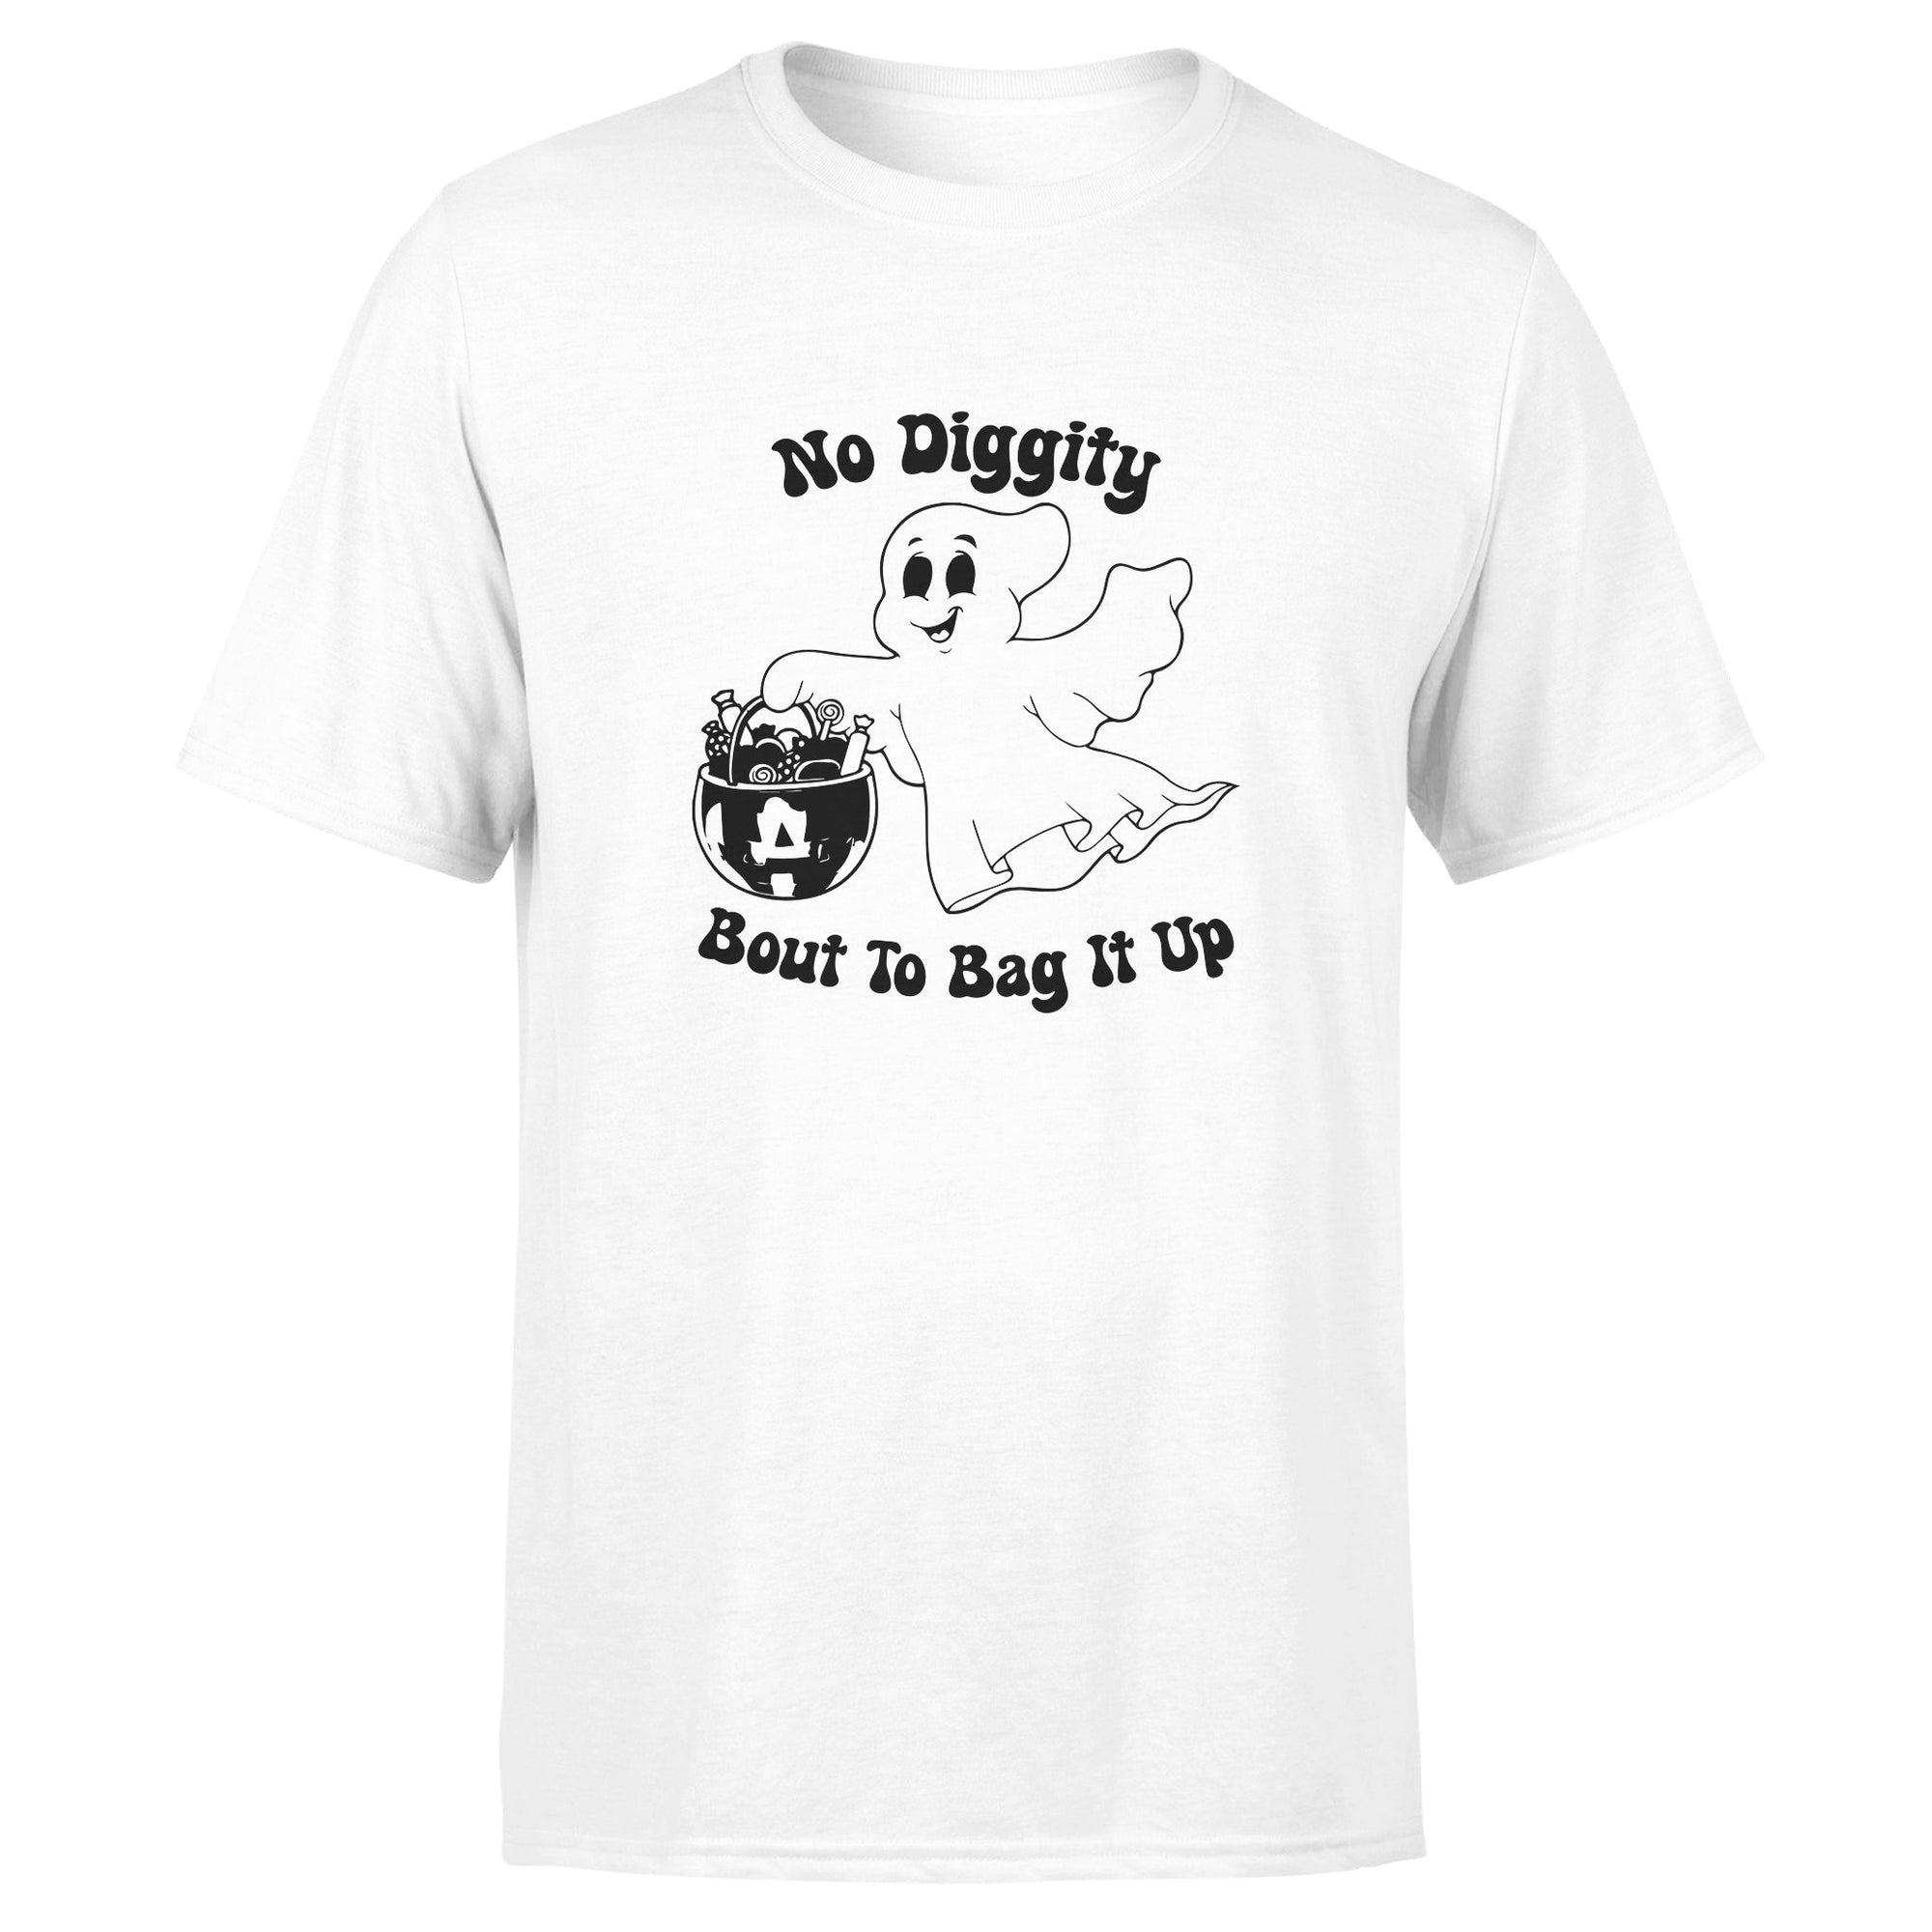 "No Diggity" - Cotton Tee - Unisex